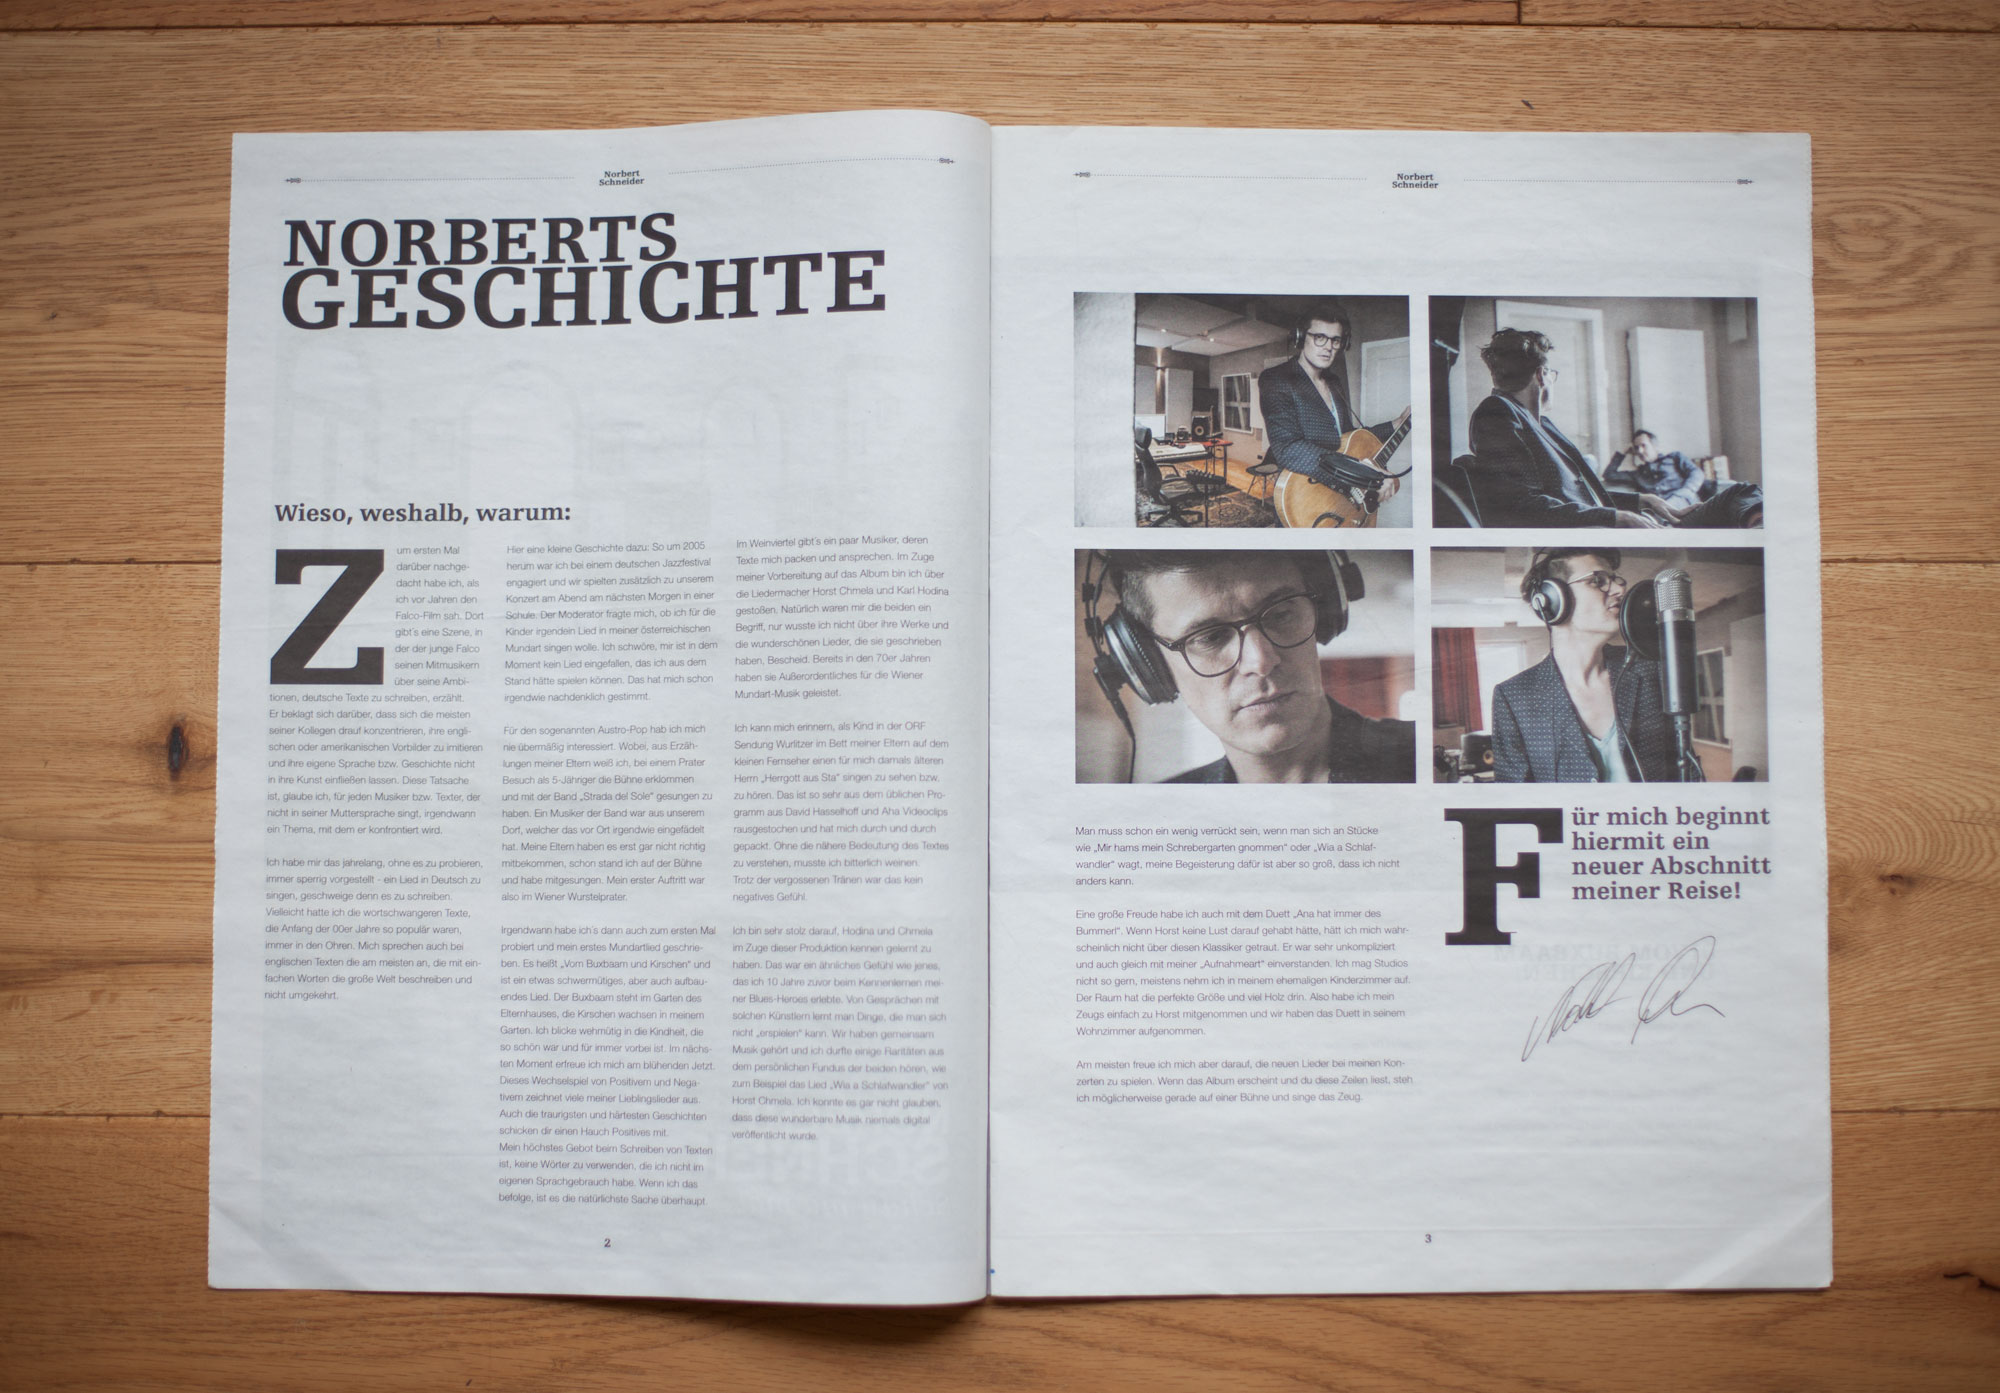 75a Büro für Gestaltung aus Stuttgart entwirft das CD-Booklet des Wiener Musikers in Form einer Zeitung